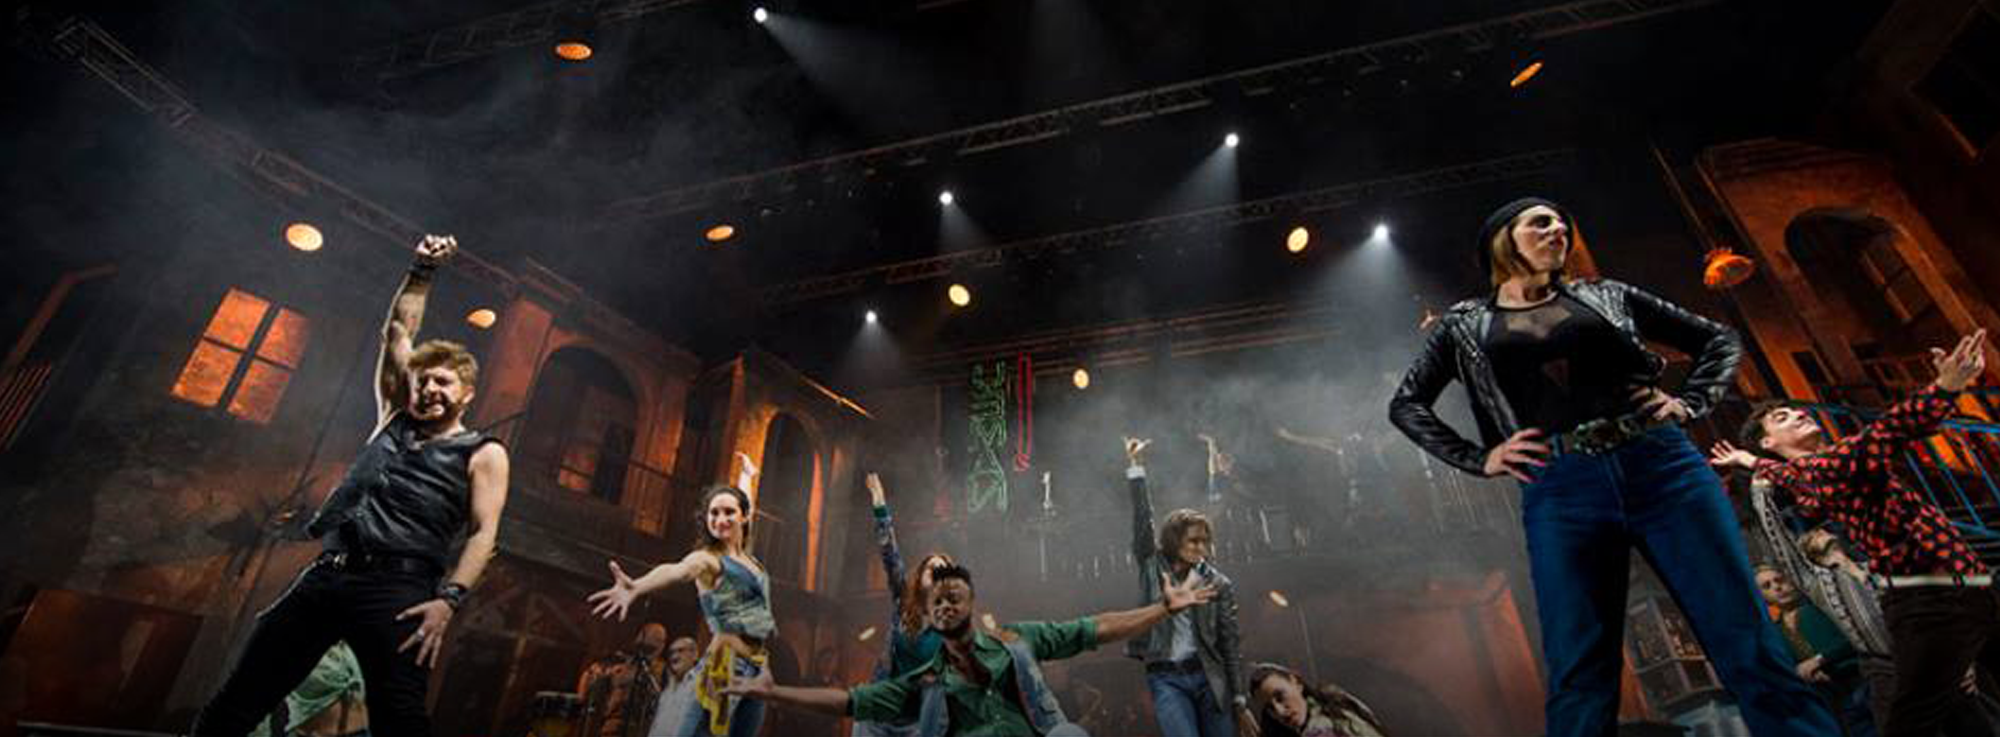 Bari: Musicanti, il musical su Pino Daniele